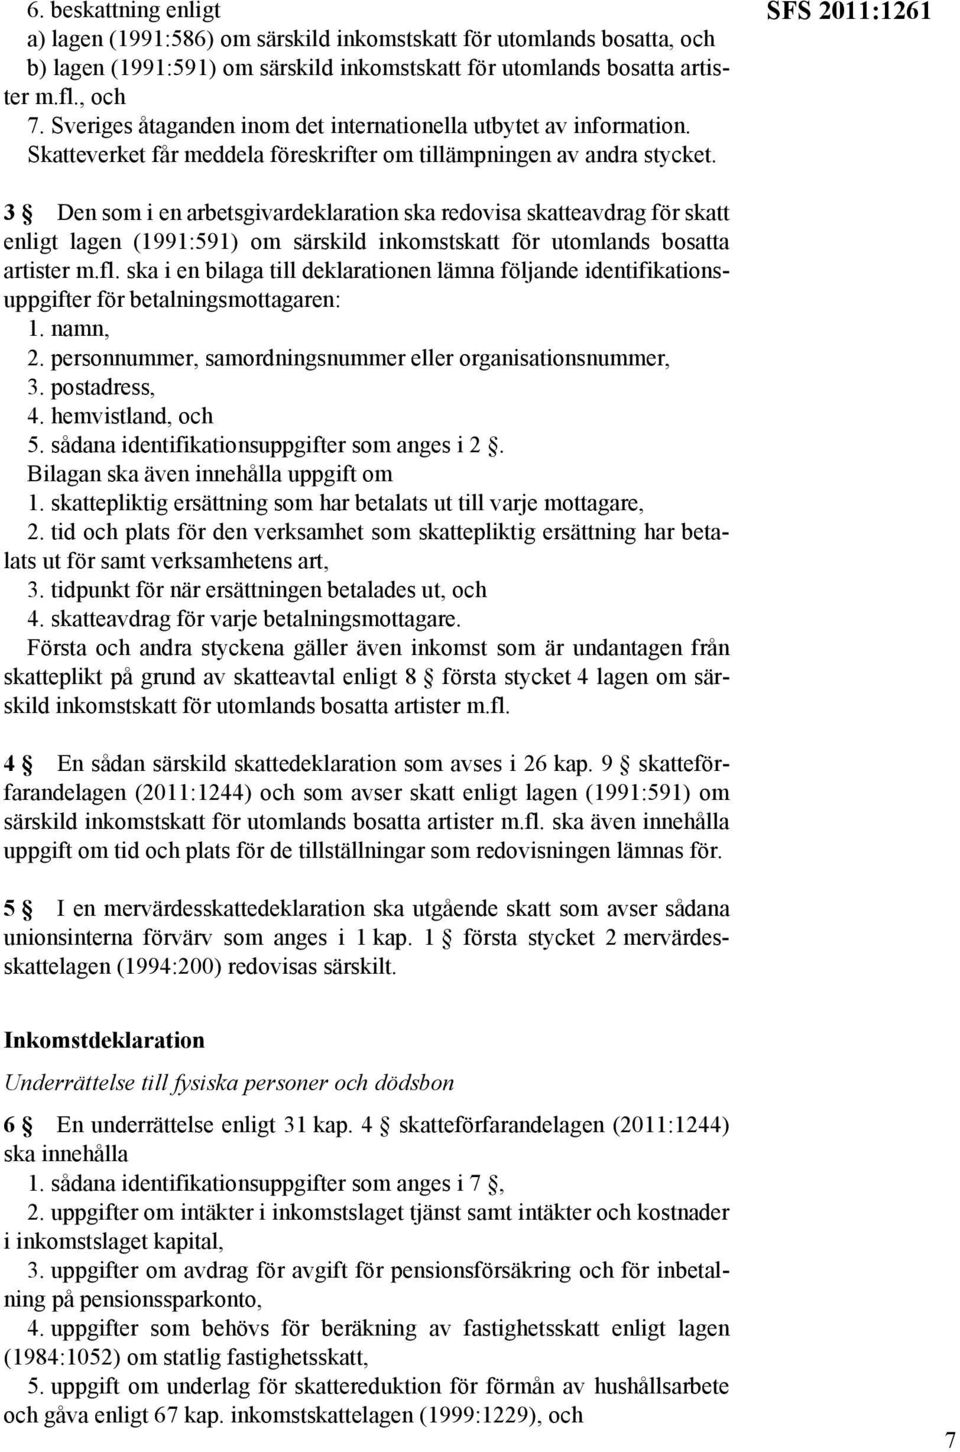 SFS 2011:1261 3 Den som i en arbetsgivardeklaration ska redovisa skatteavdrag för skatt enligt lagen (1991:591) om särskild inkomstskatt för utomlands bosatta artister m.fl.